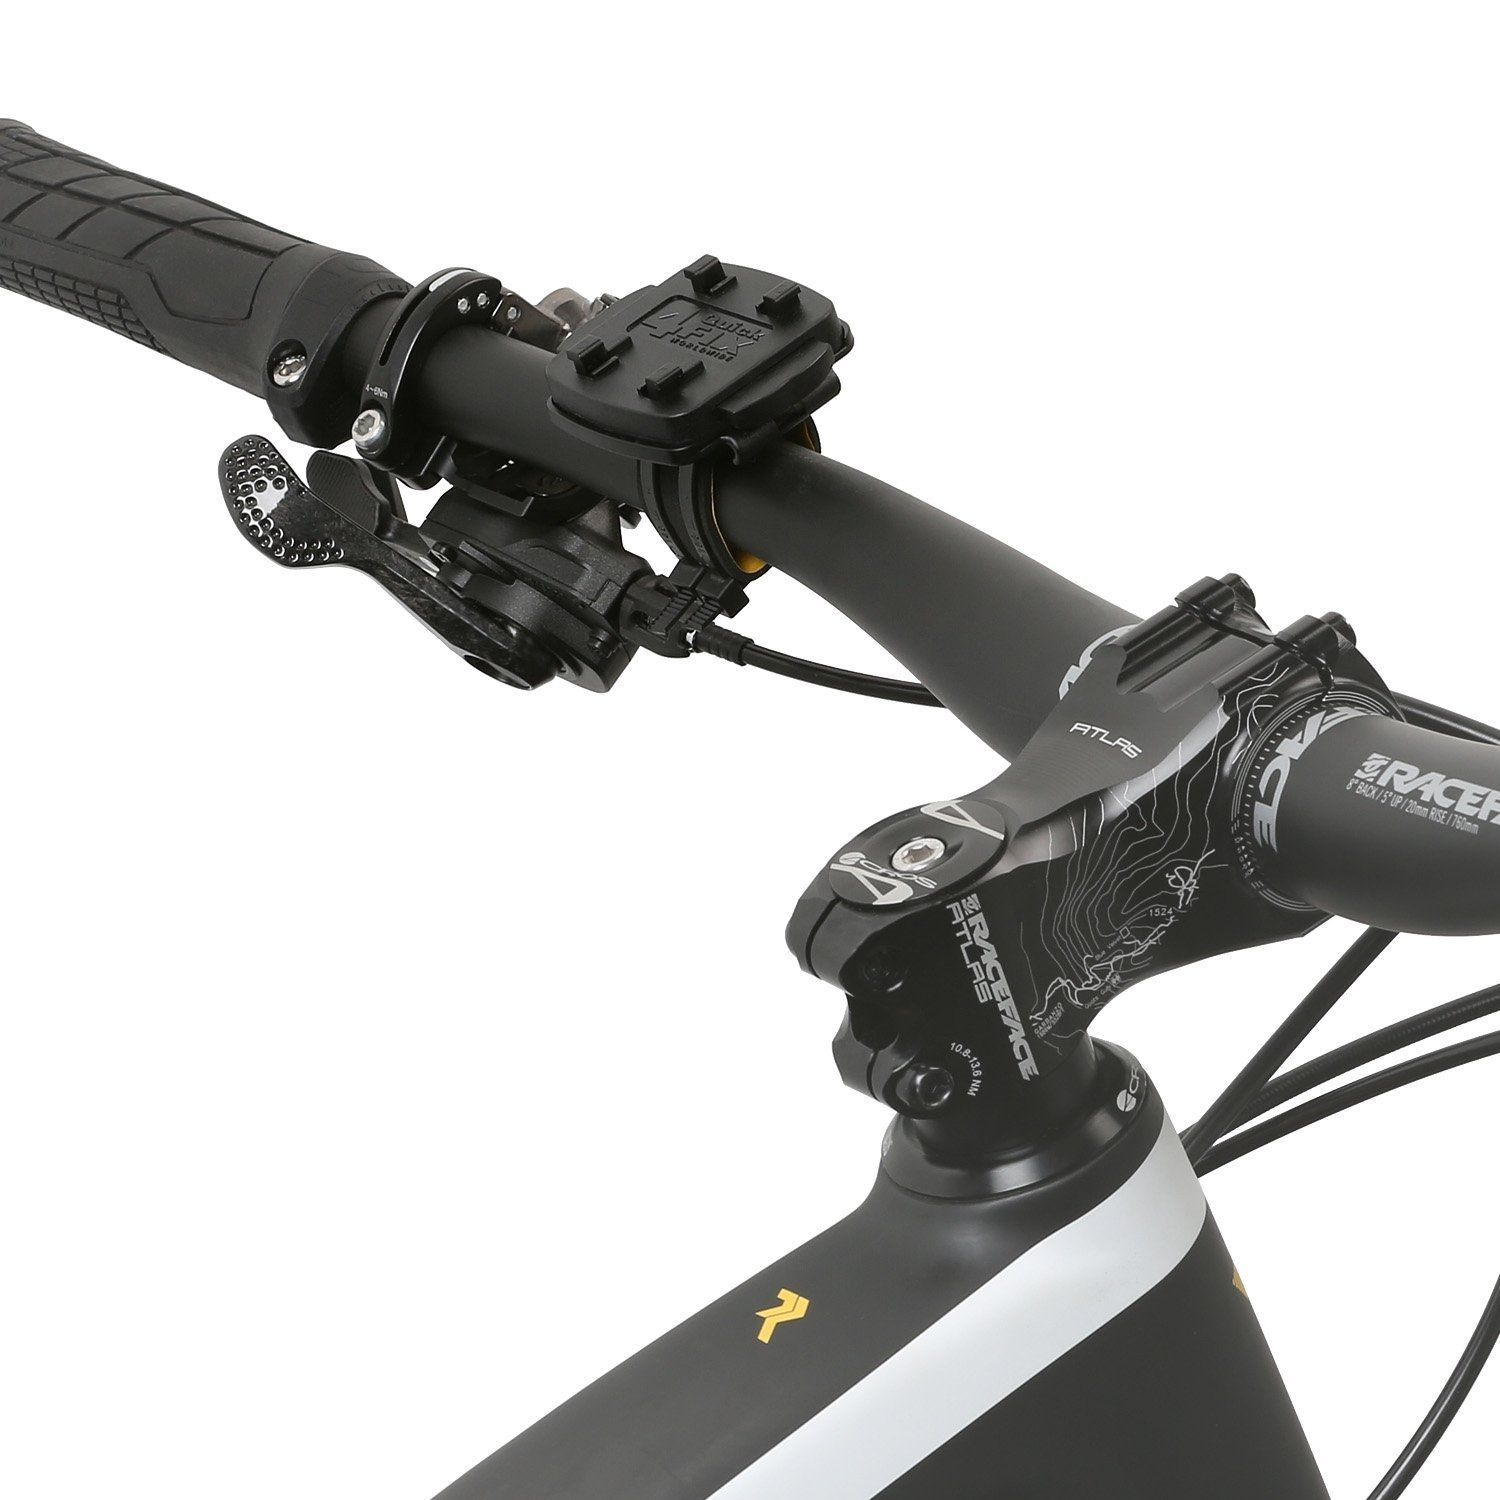 WICKED CHILI Fahrradhalter für Garmin Adapter, - Vorbau schwarz Lenker Kabelbinder Astro, für Fahrradhalterung, Dakota, Approach, Fahrrad- eTrex, GPSMAP Oregon, oder Lenker 22-32 mm, Ø mit passend